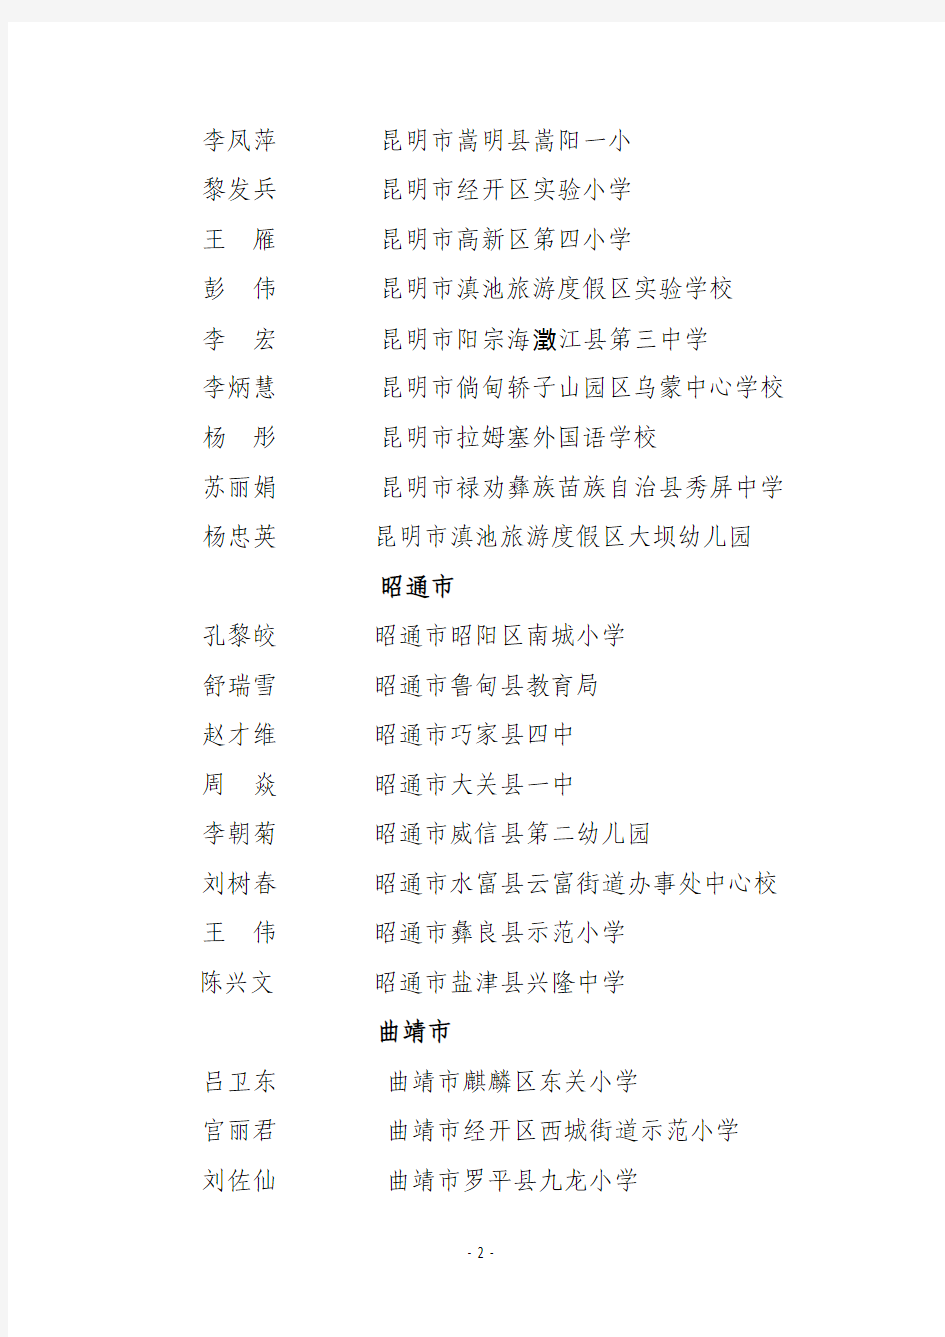 2013年云南省“三生教育”骨干教师公示名单